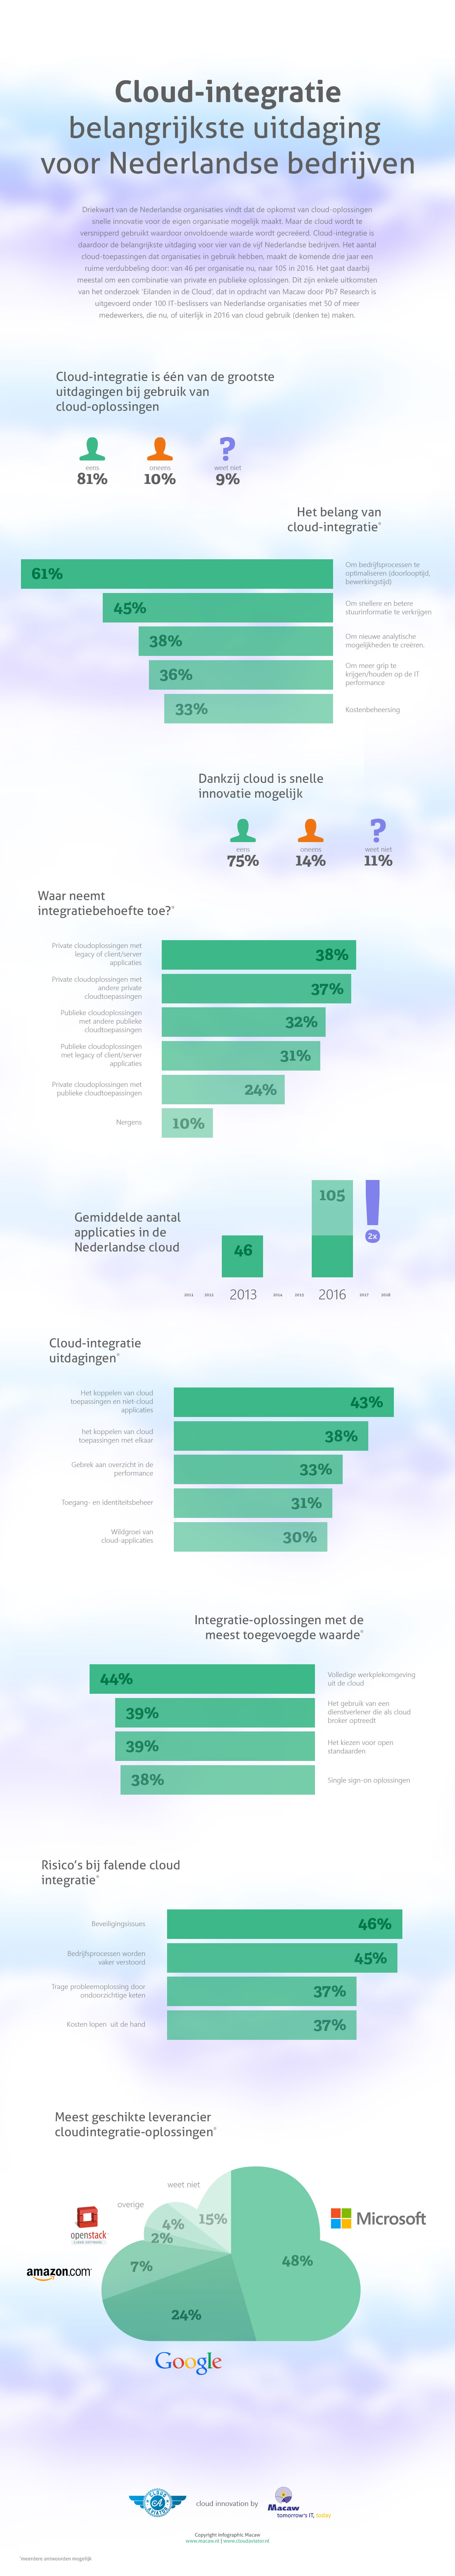 Infographic_CloudIntegratie